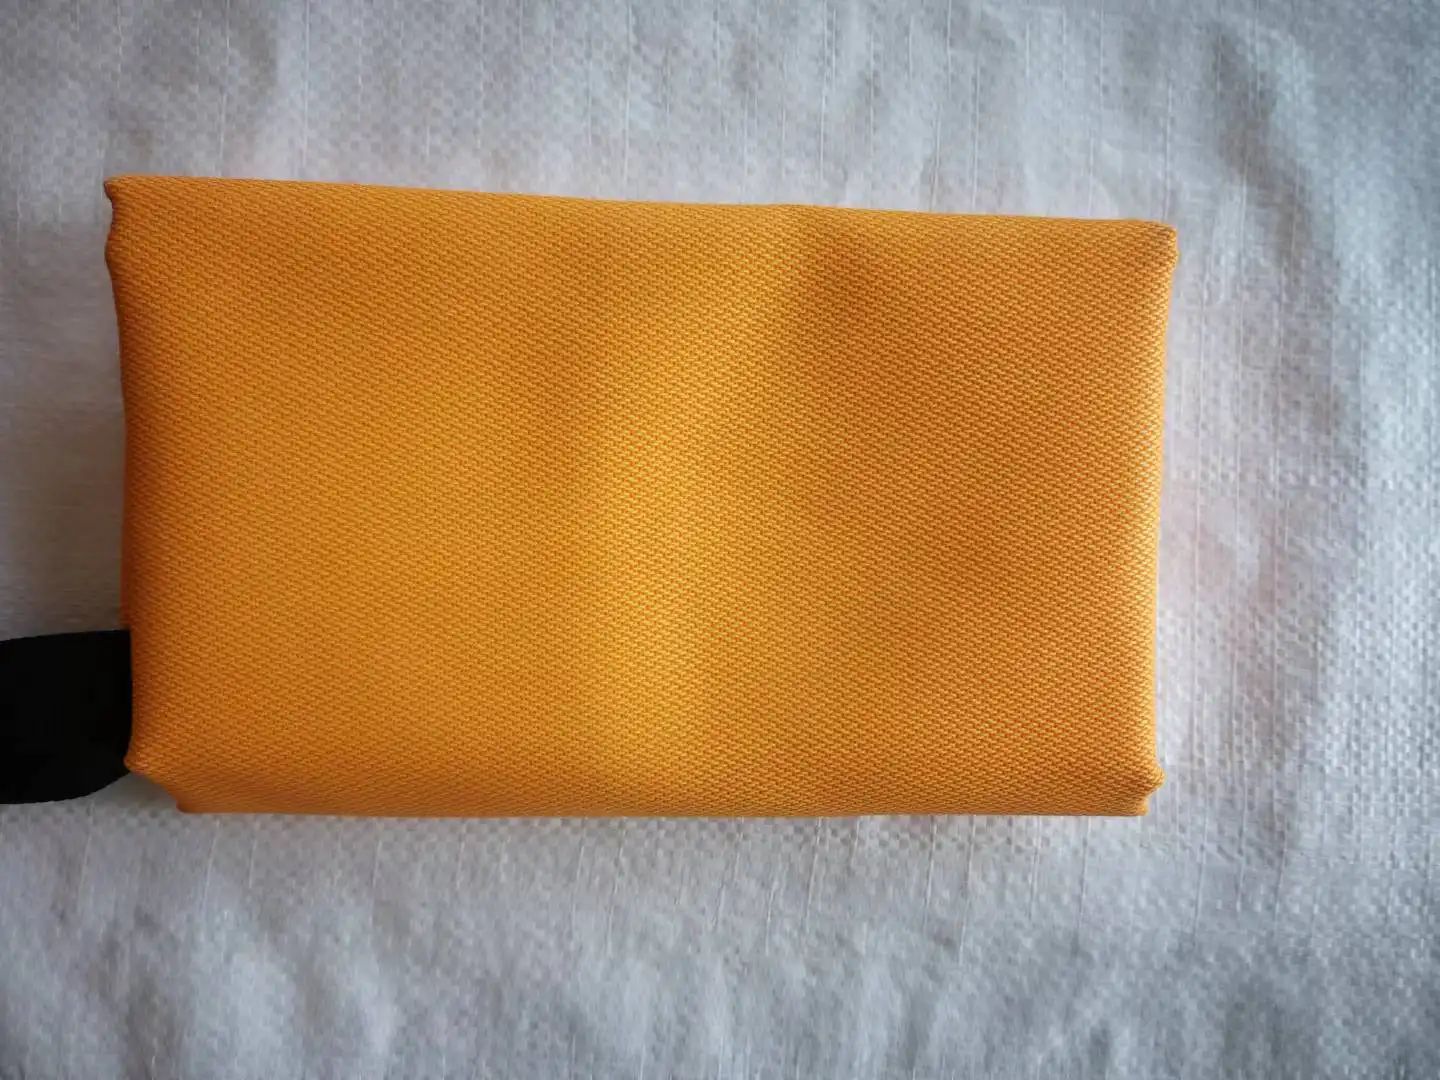 Shangqiu Huanyu Golden Square Welding Blanket Fiberglass Welding Mat With PVC Box